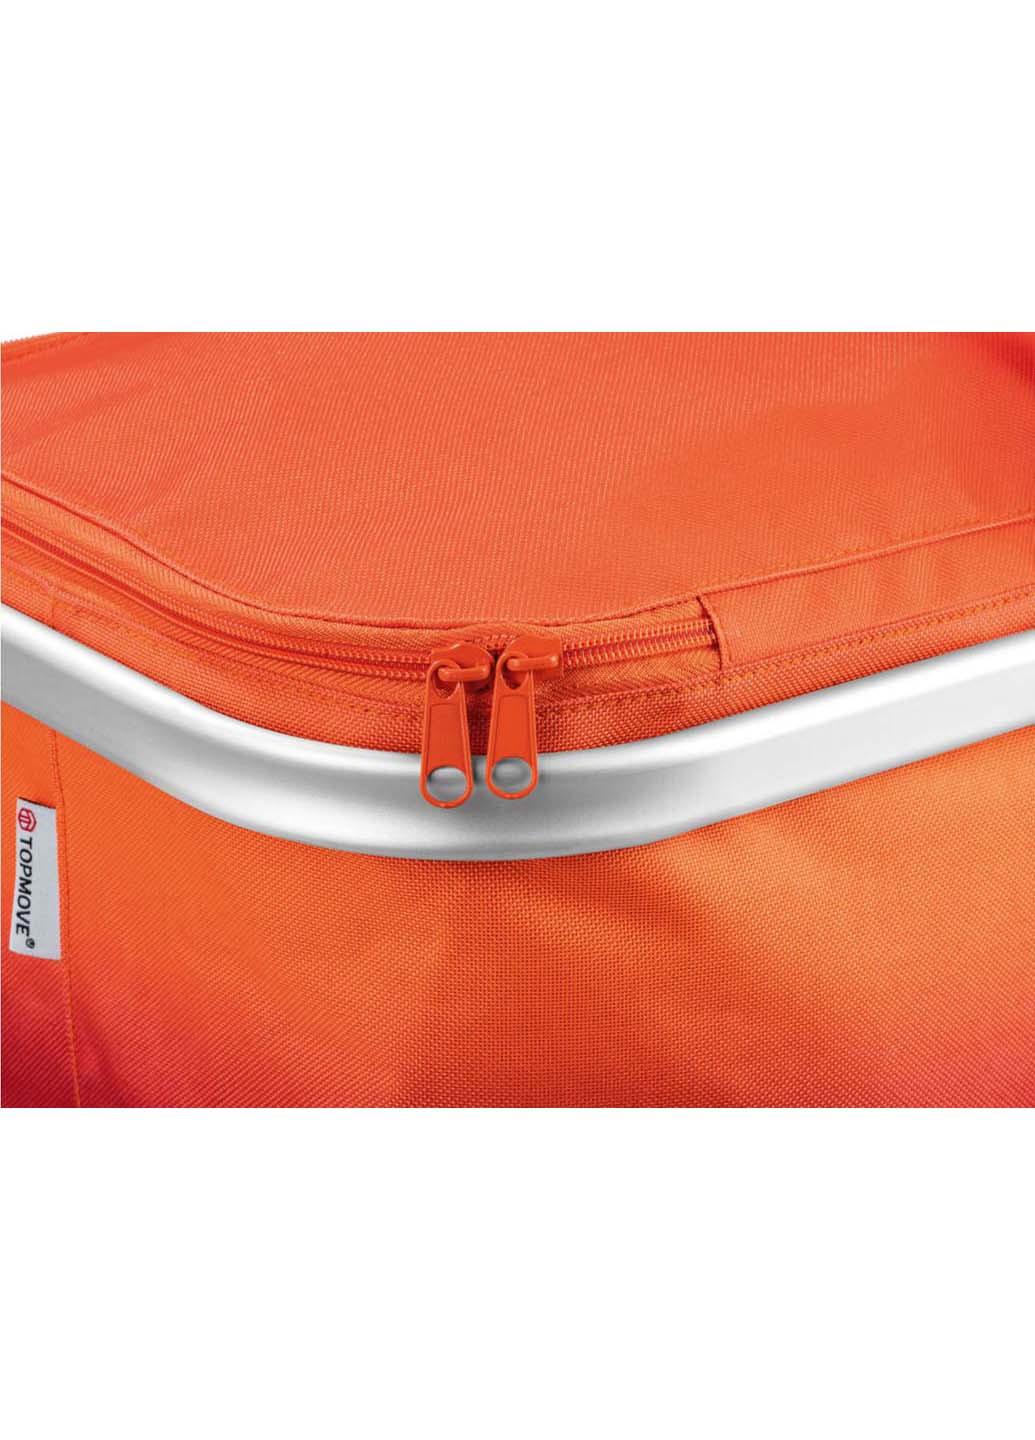 Сумка-корзинка для покупок складная Shopping Tote bag Top Move (257996434)